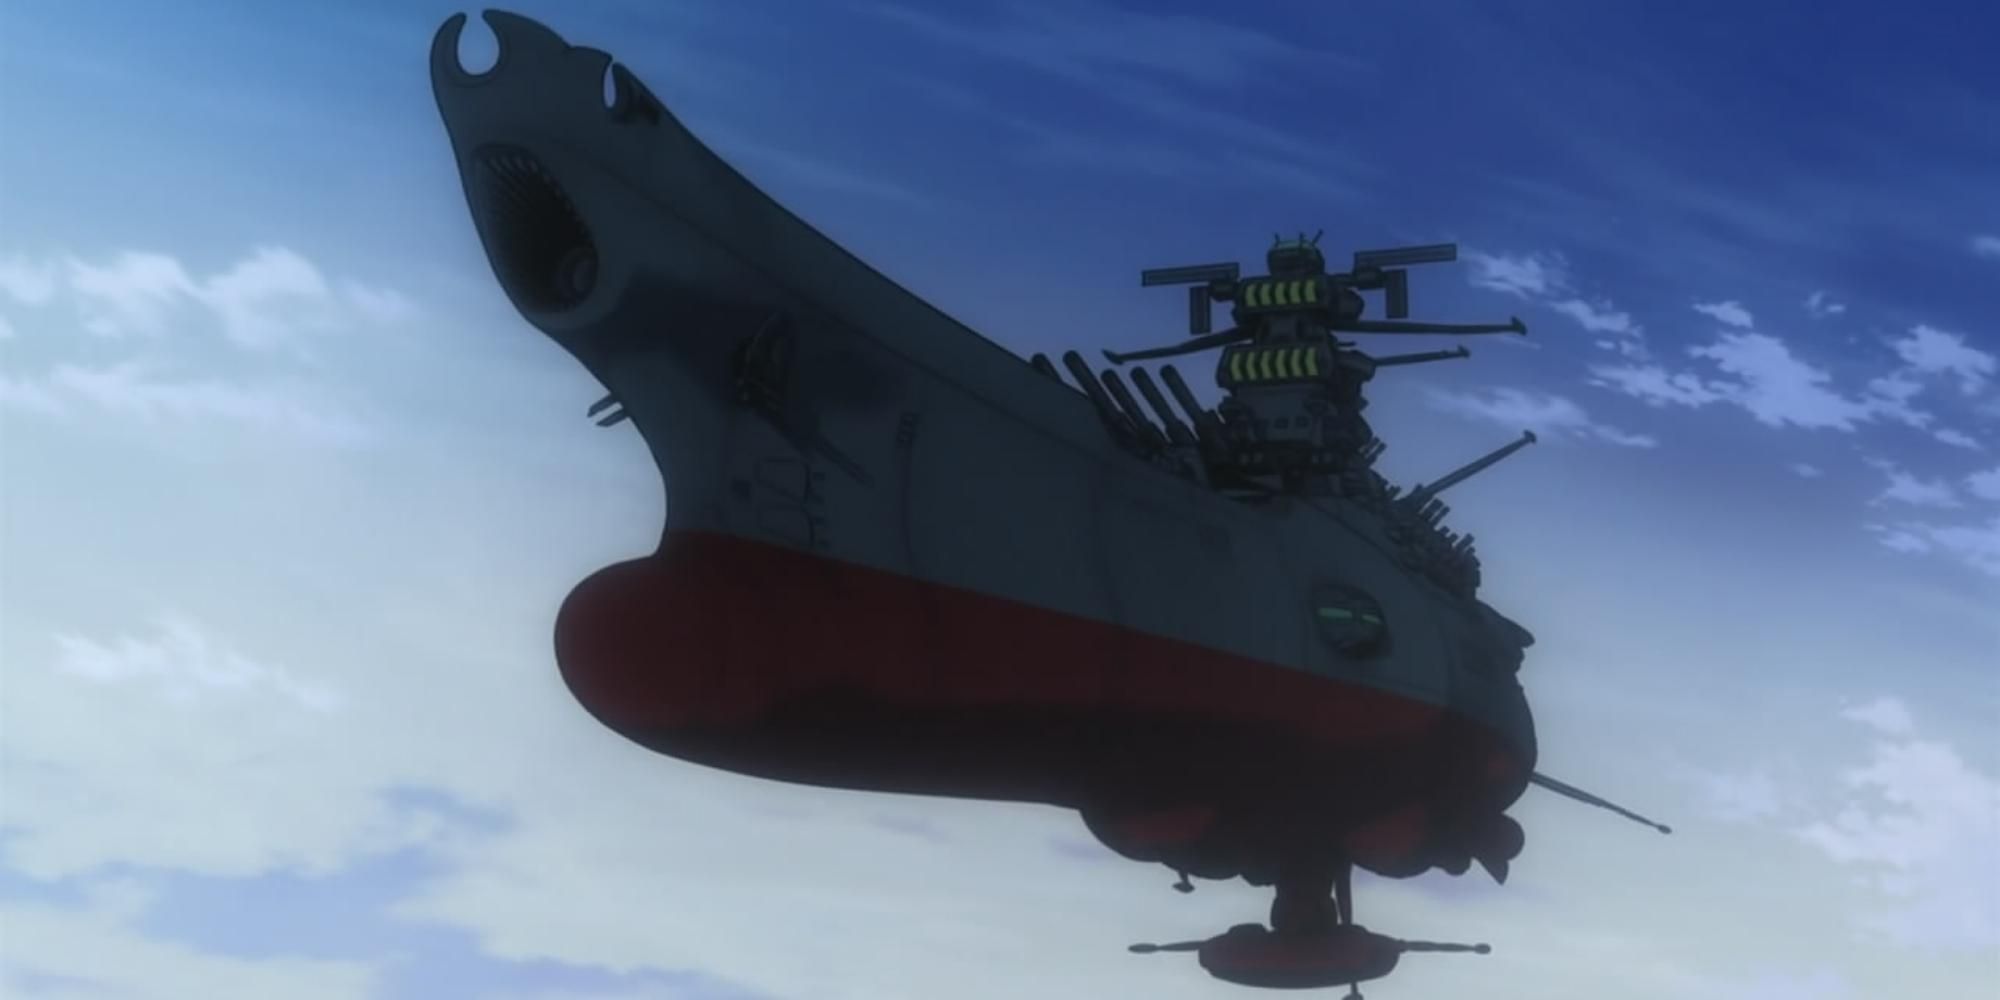 The Yamato spaceship in Star Blazers Space Battleship Yamato 2199